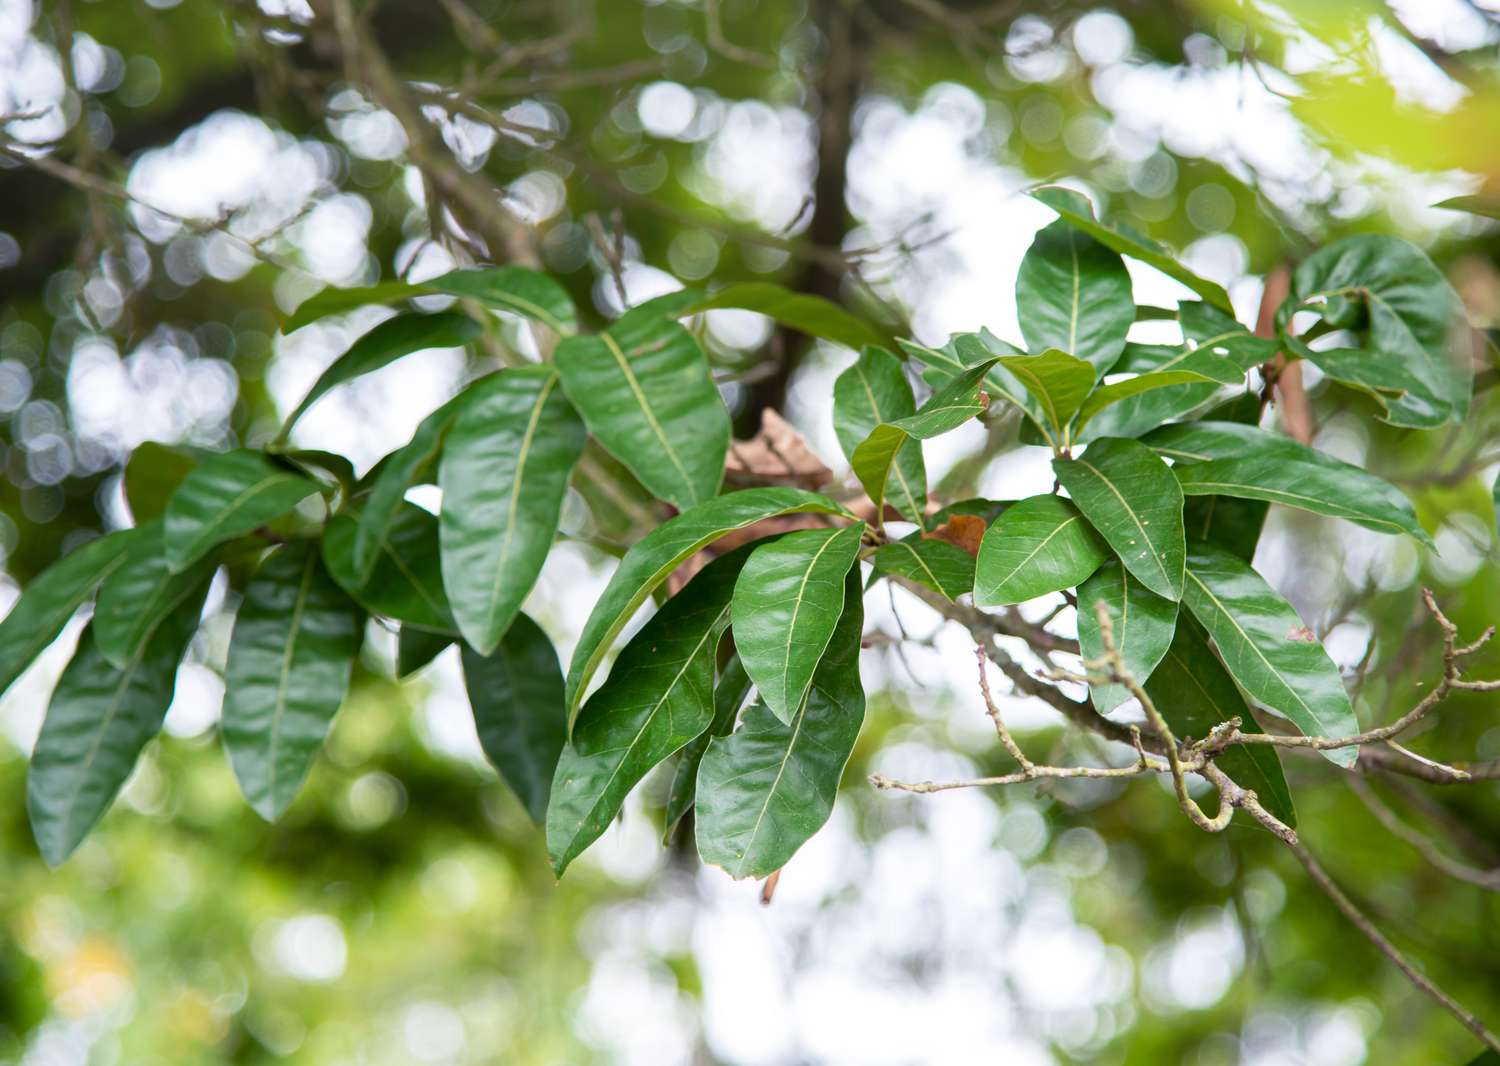 Schindeleichenast mit großen und wachsgrünen Blättern in Nahaufnahme